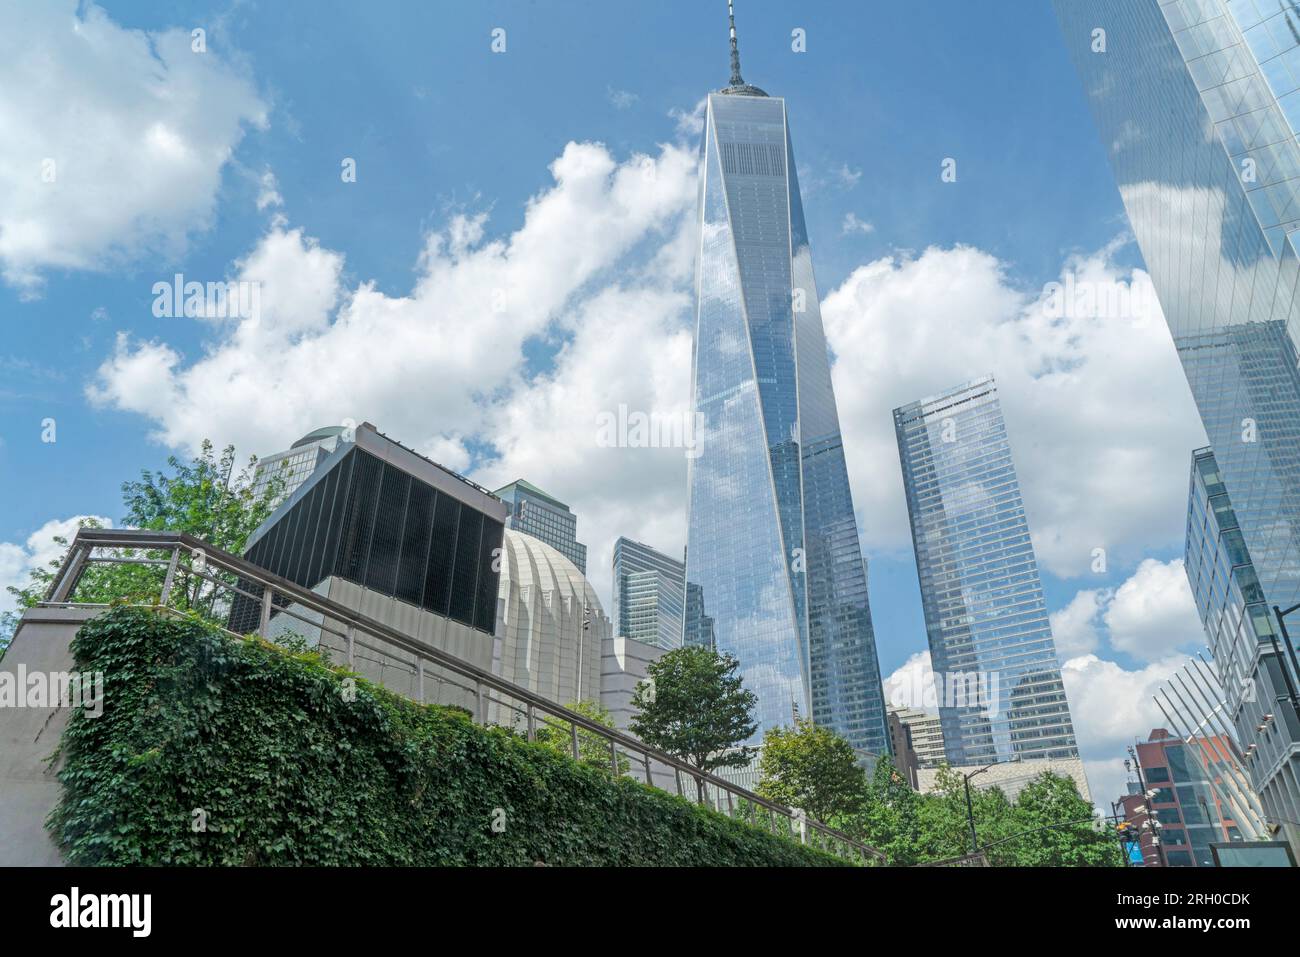 Centrato dal 1 World Trade Center, alti grattacieli sono stati eretti sul sito del World Trade Center insieme all'Oculus e al St Nicholas Church. Foto Stock